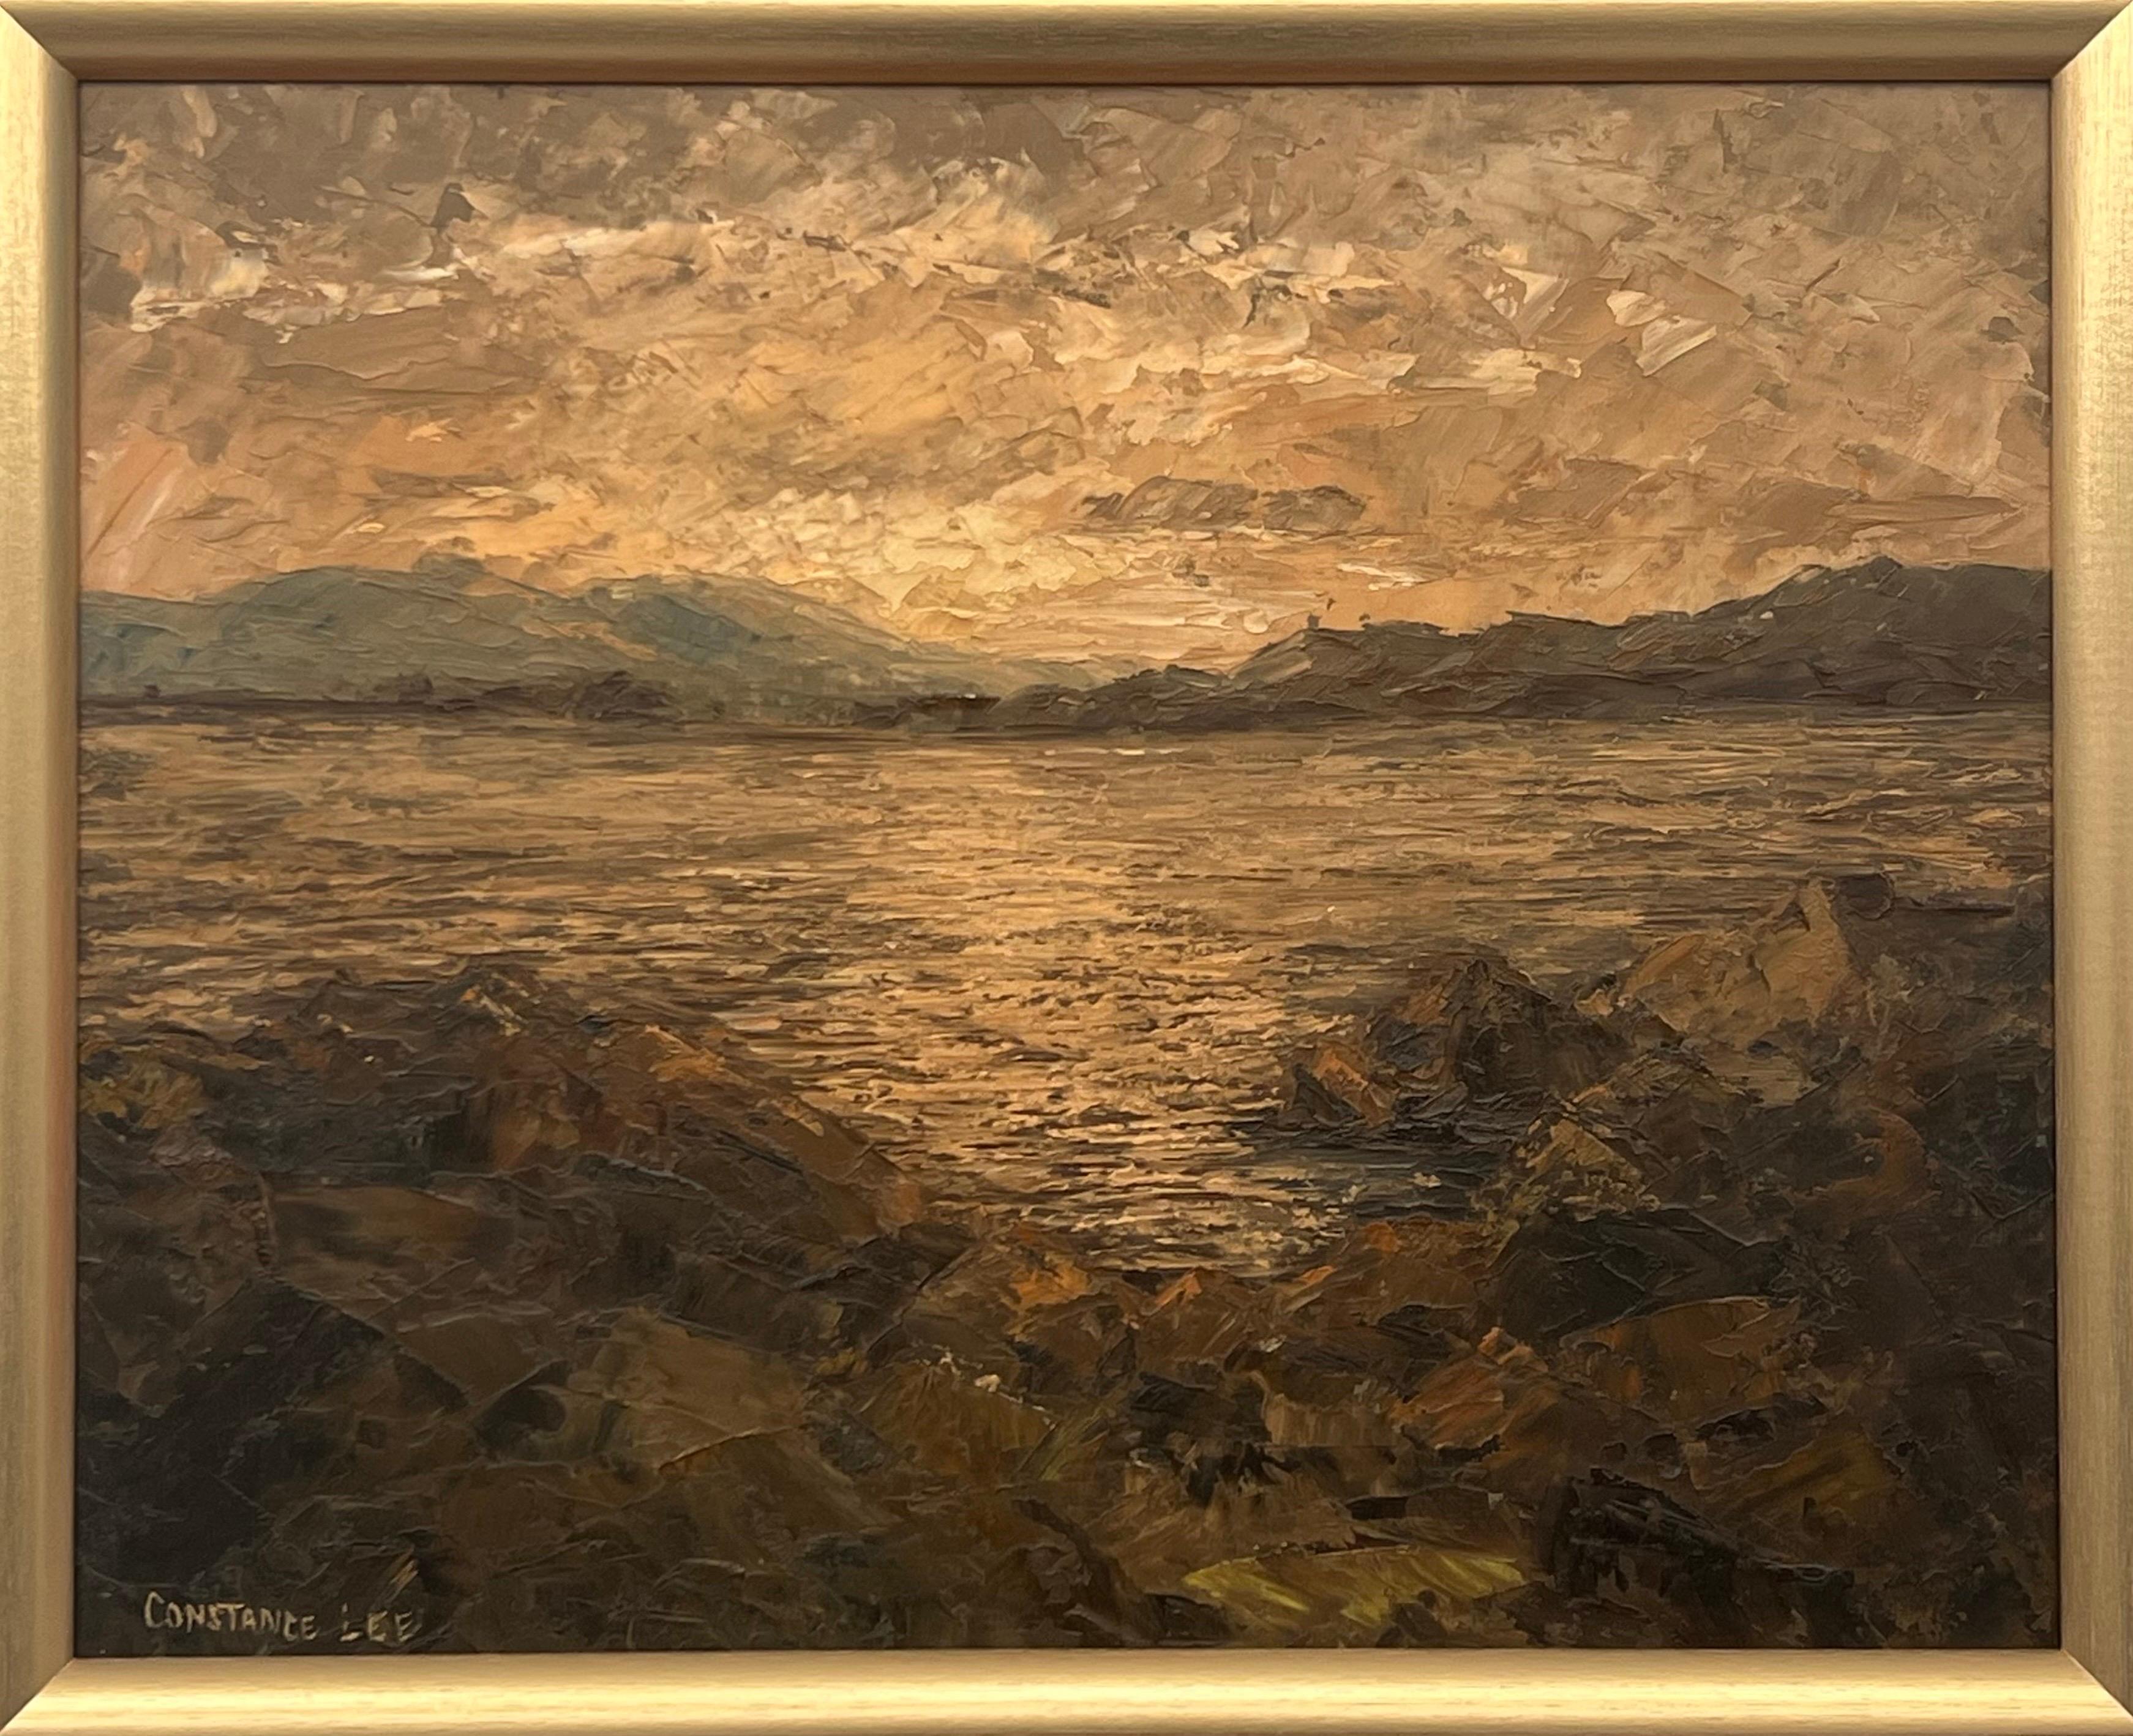 Atmosphärische Meereslandschaft, Sonnenuntergang, Landschaft Impasto, Ölgemälde des 20. Jahrhunderts, Künstler